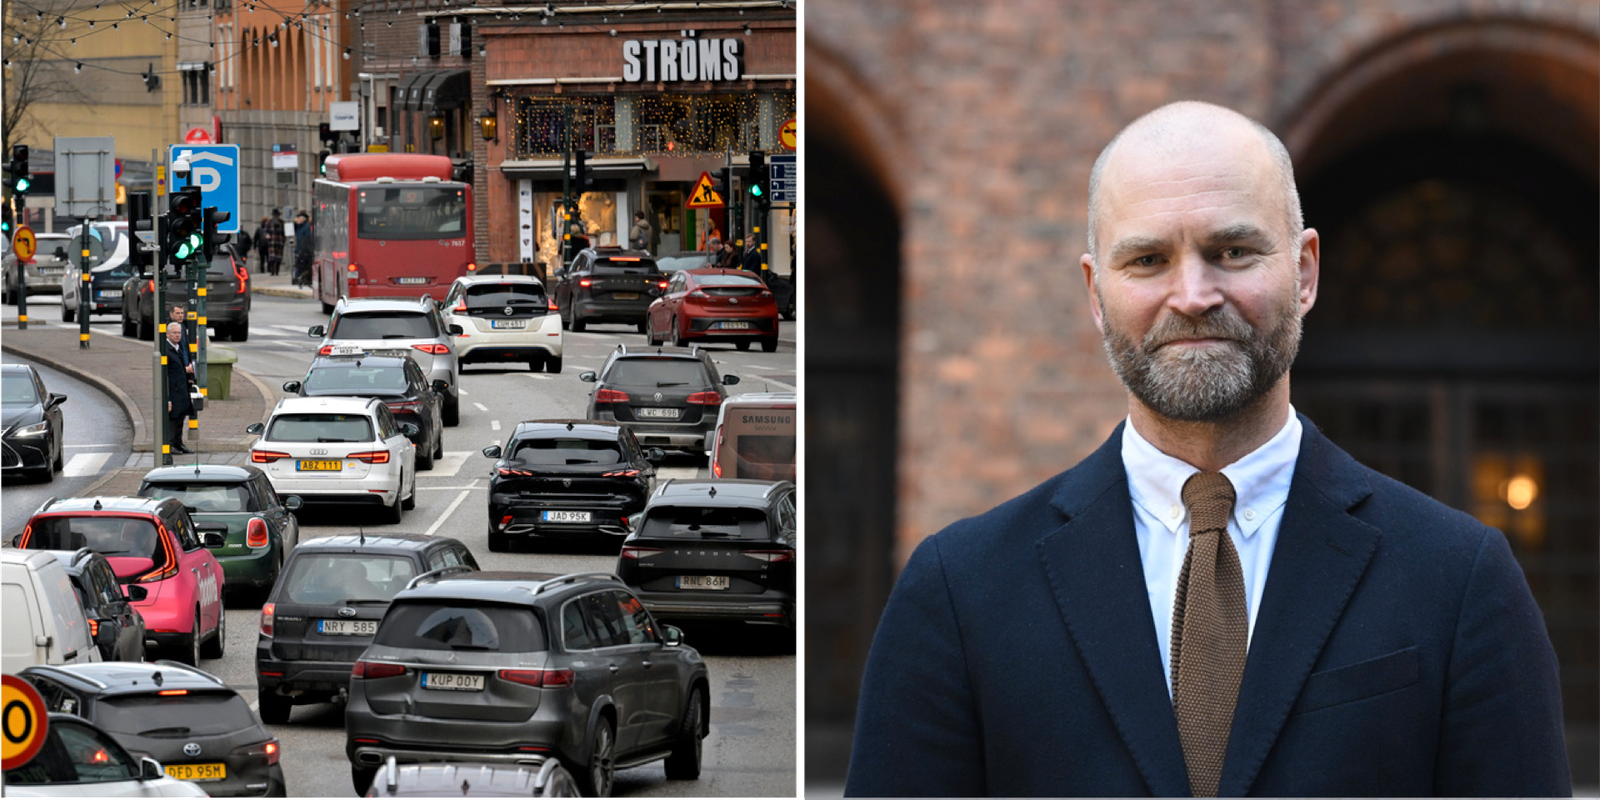 bensin- och dieselbilar förbjuds i centrala stockholm – m överklagar